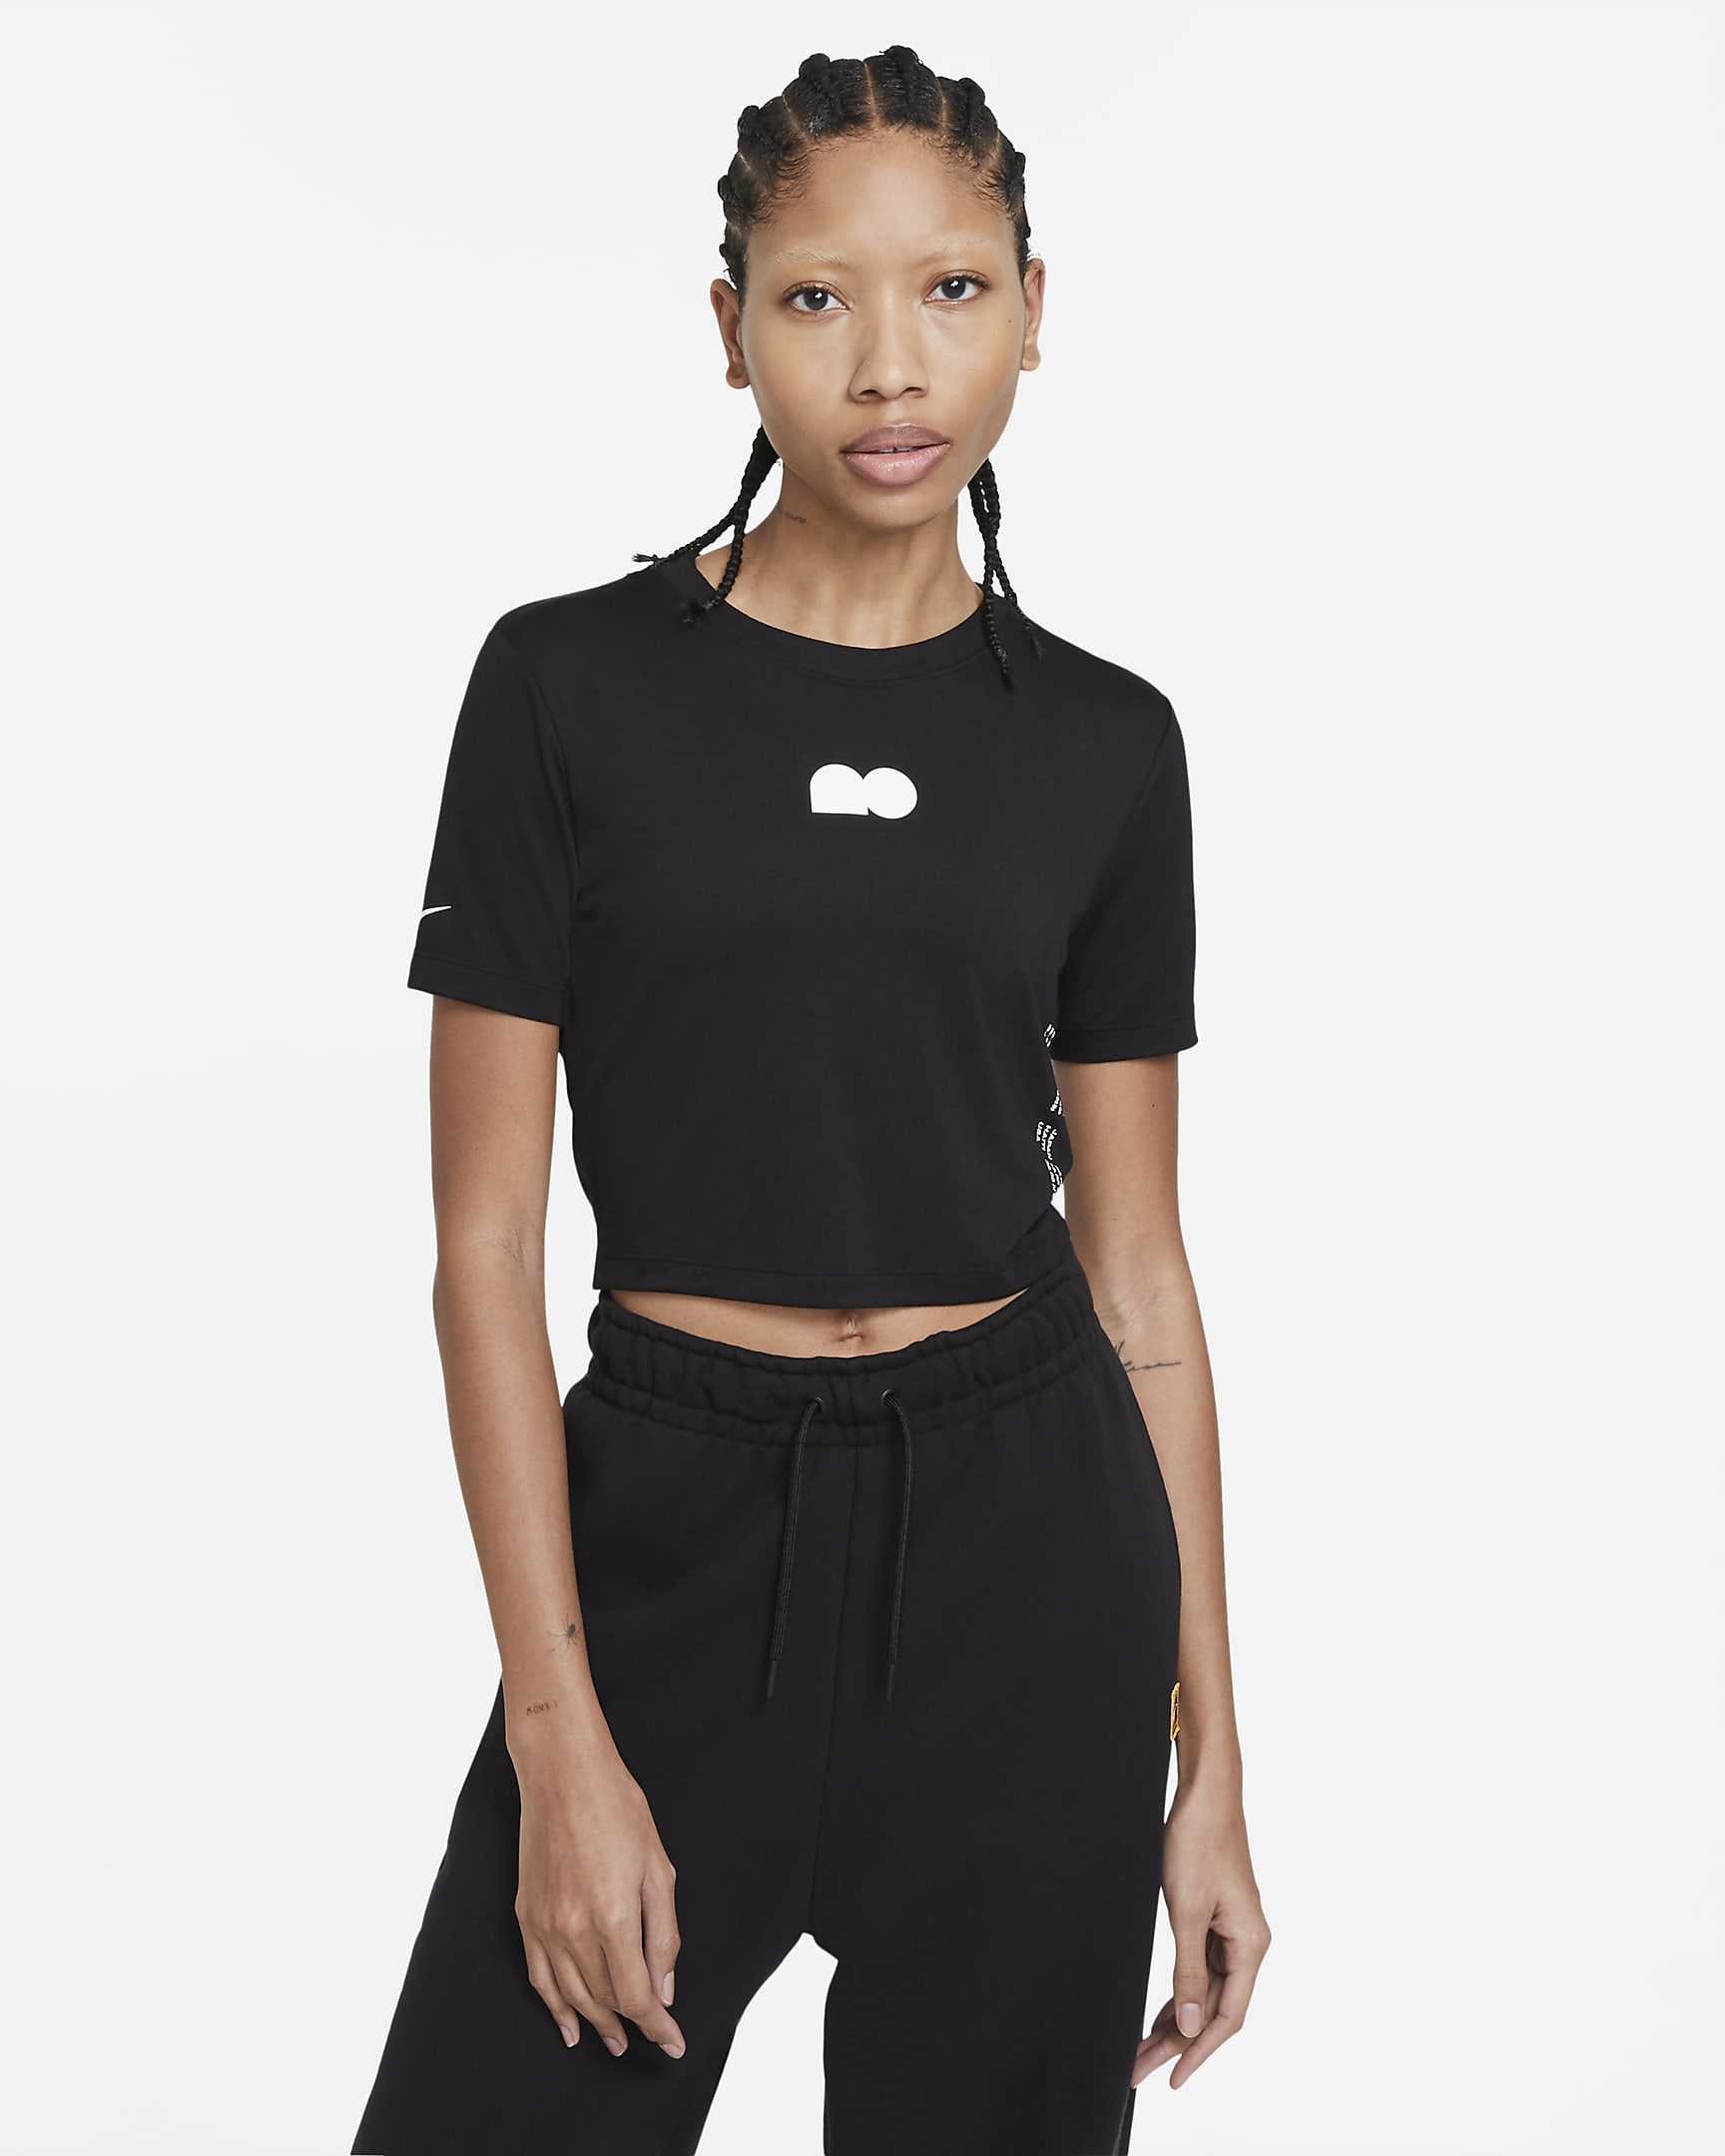 Naomi Osaka Cropped Tennis T-Shirt. Nike ZA